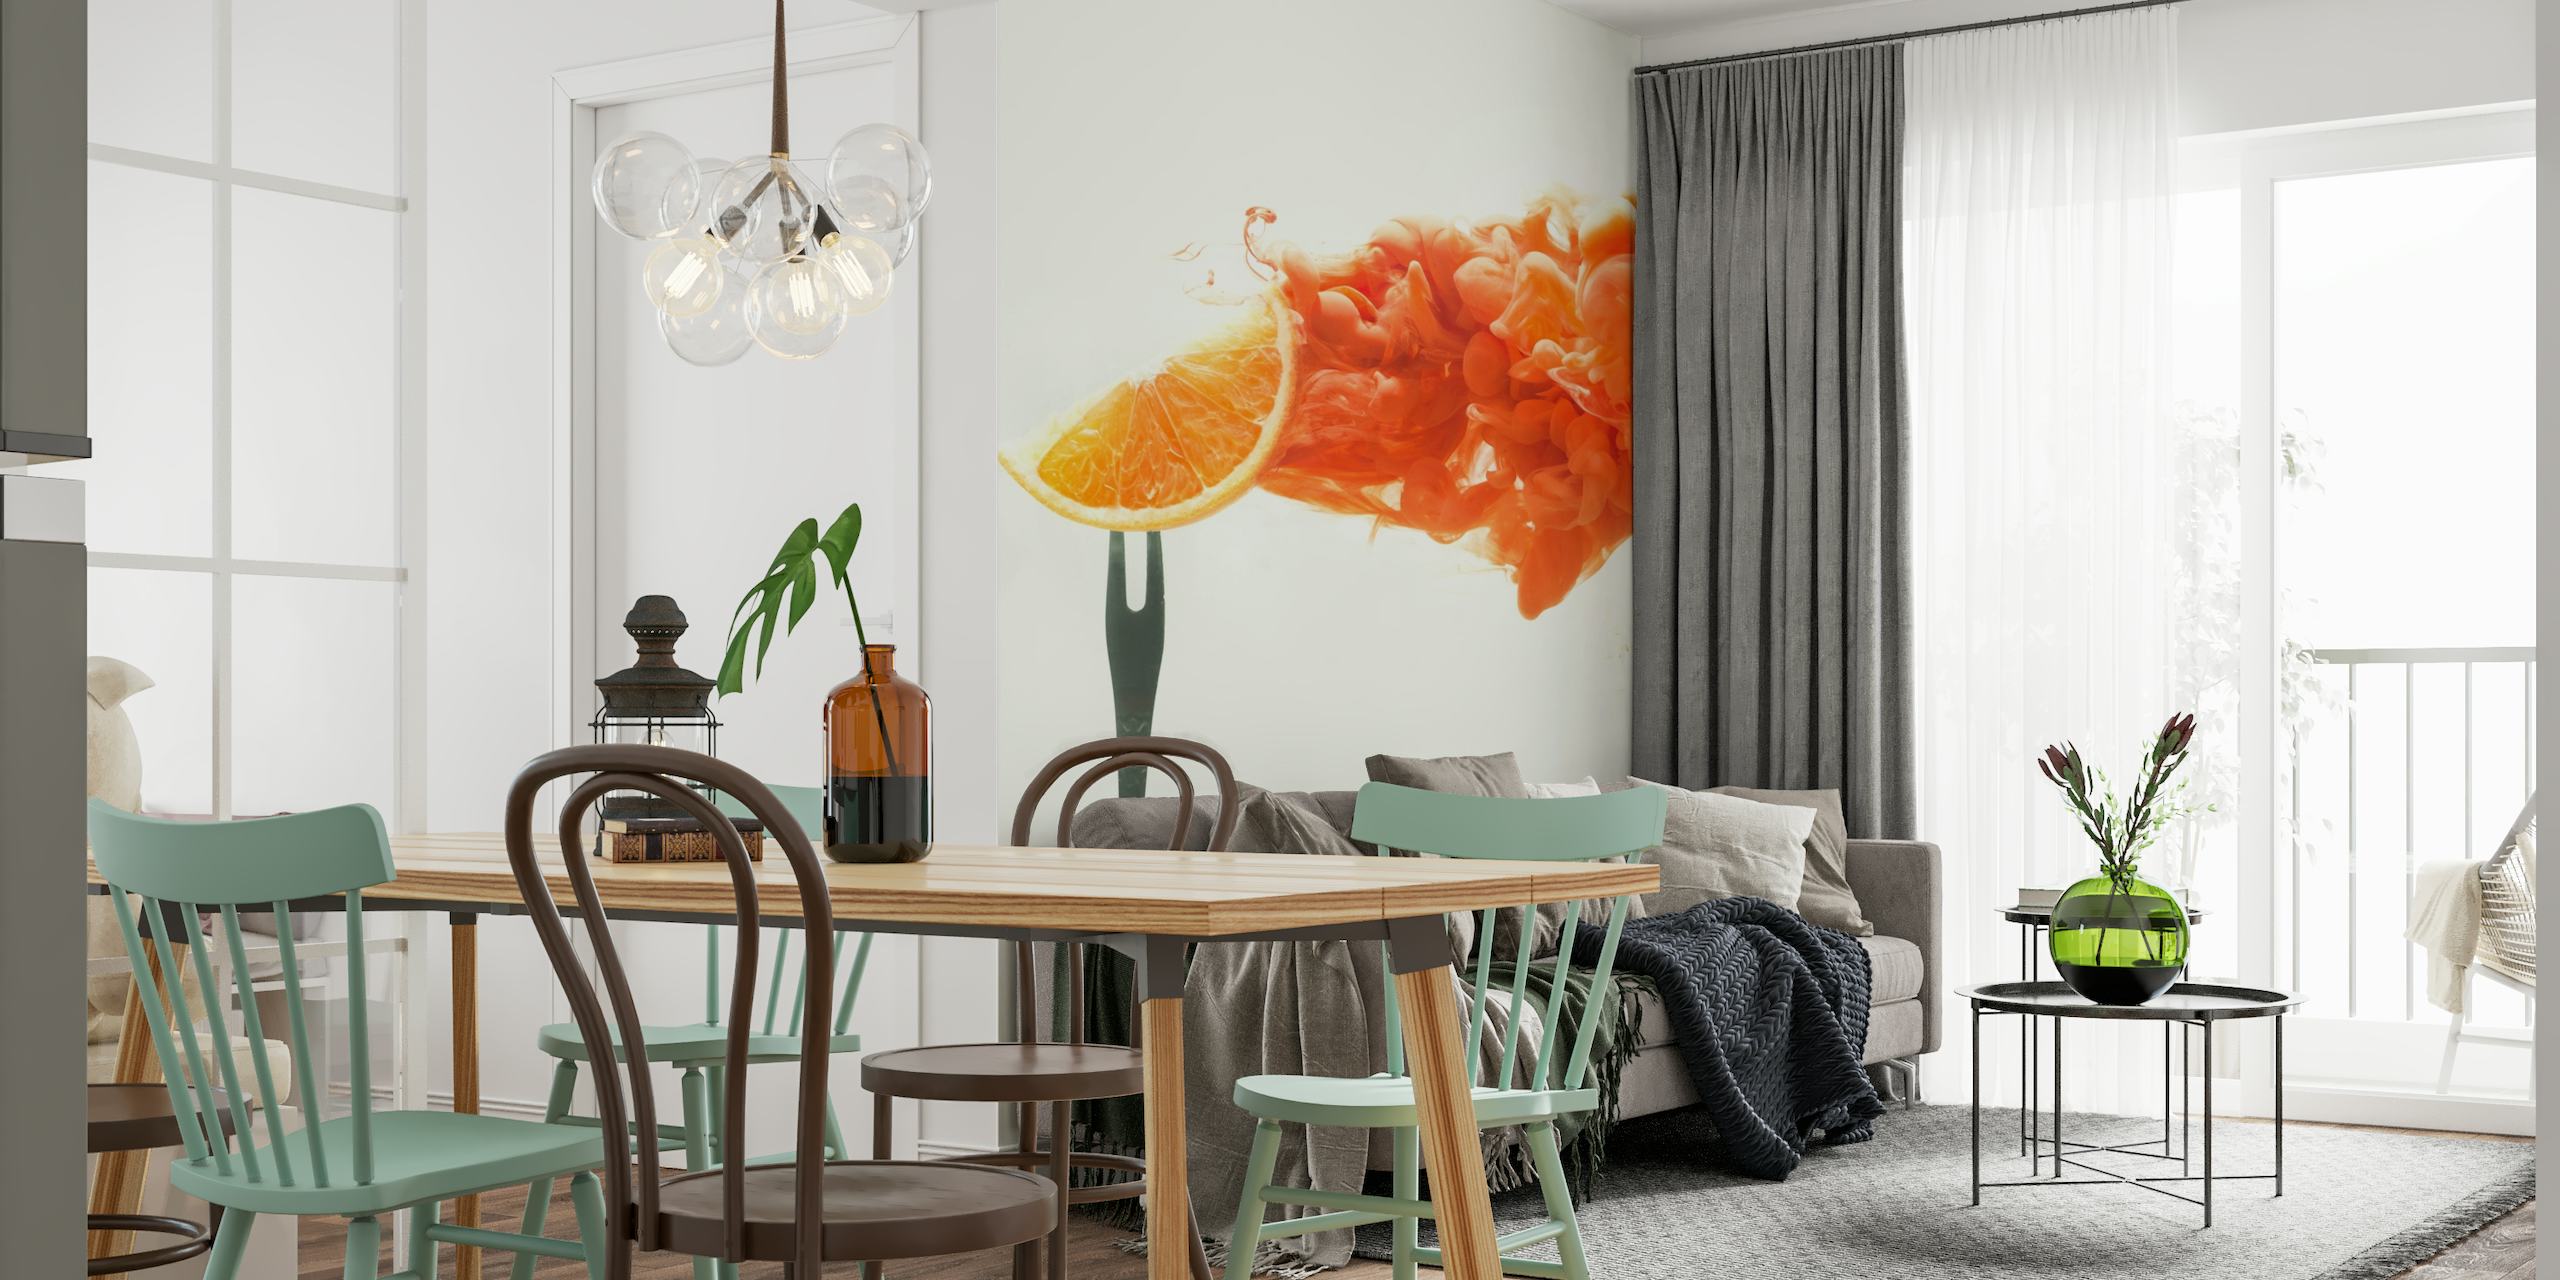 Disintegrated orange wallpaper